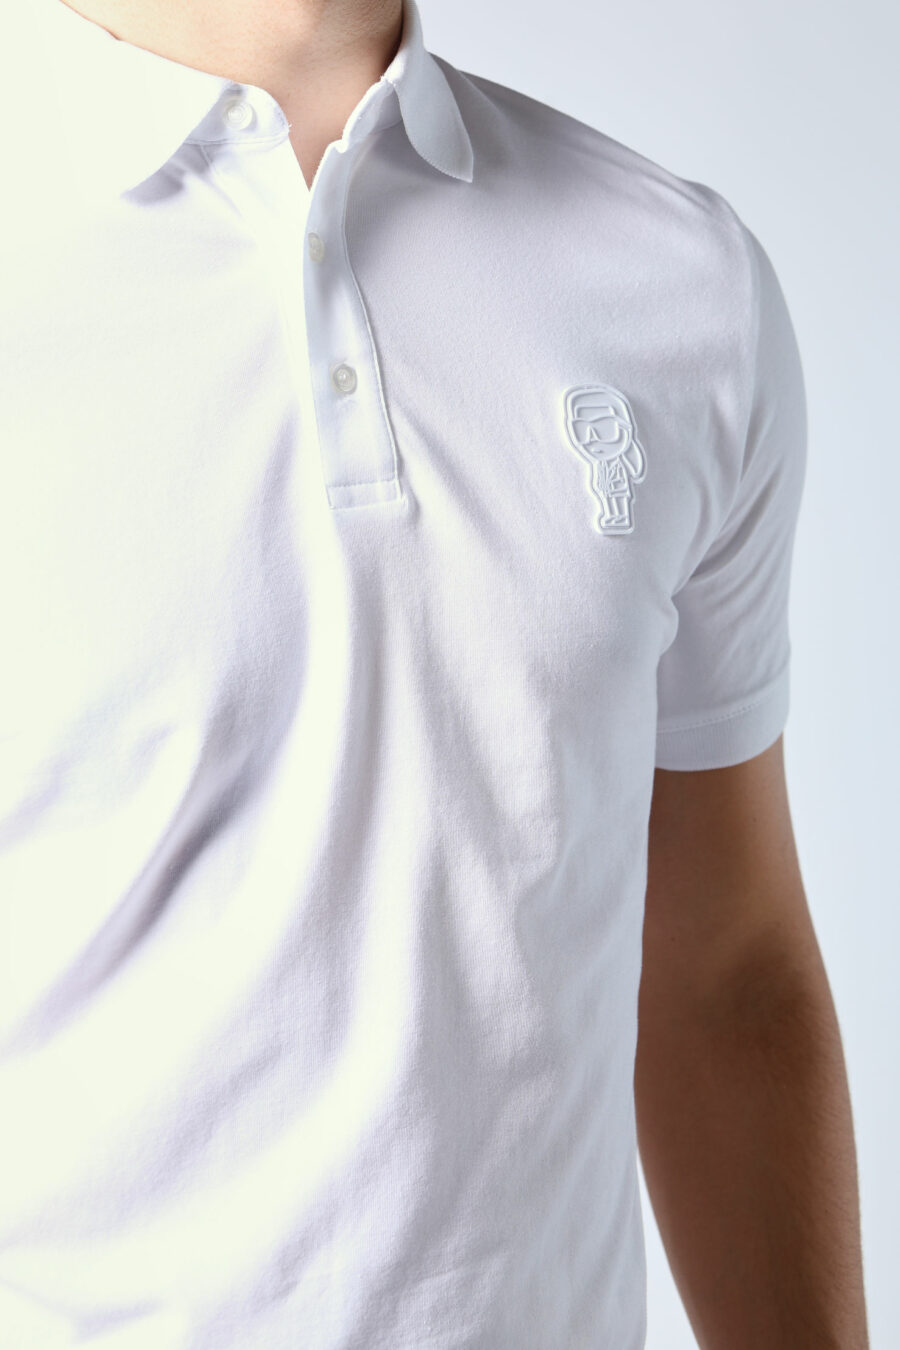 Pólo branco com mini-logotipo monocromático - Untitled Catalog 05725